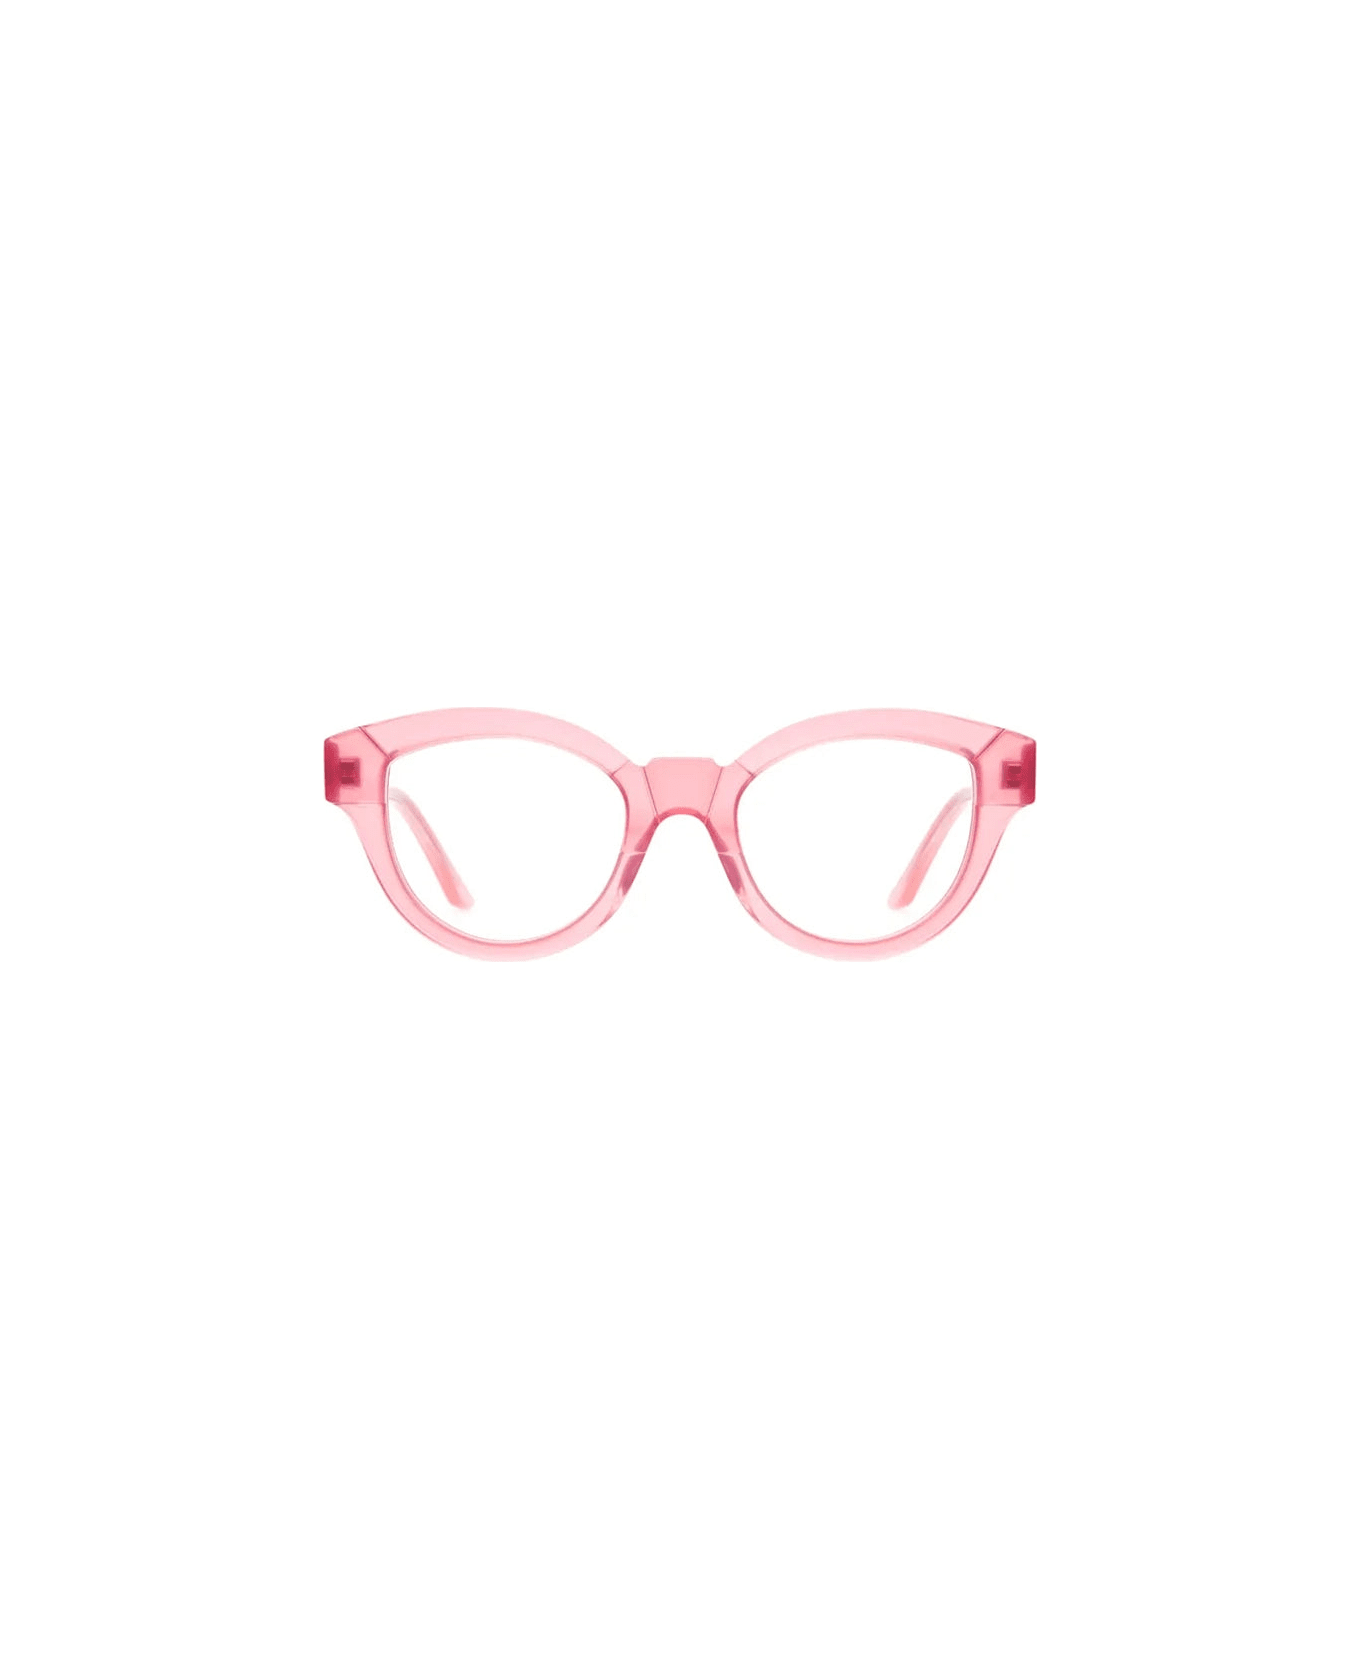 Kuboraum Mask K27 - Blush Glasses - pink blush